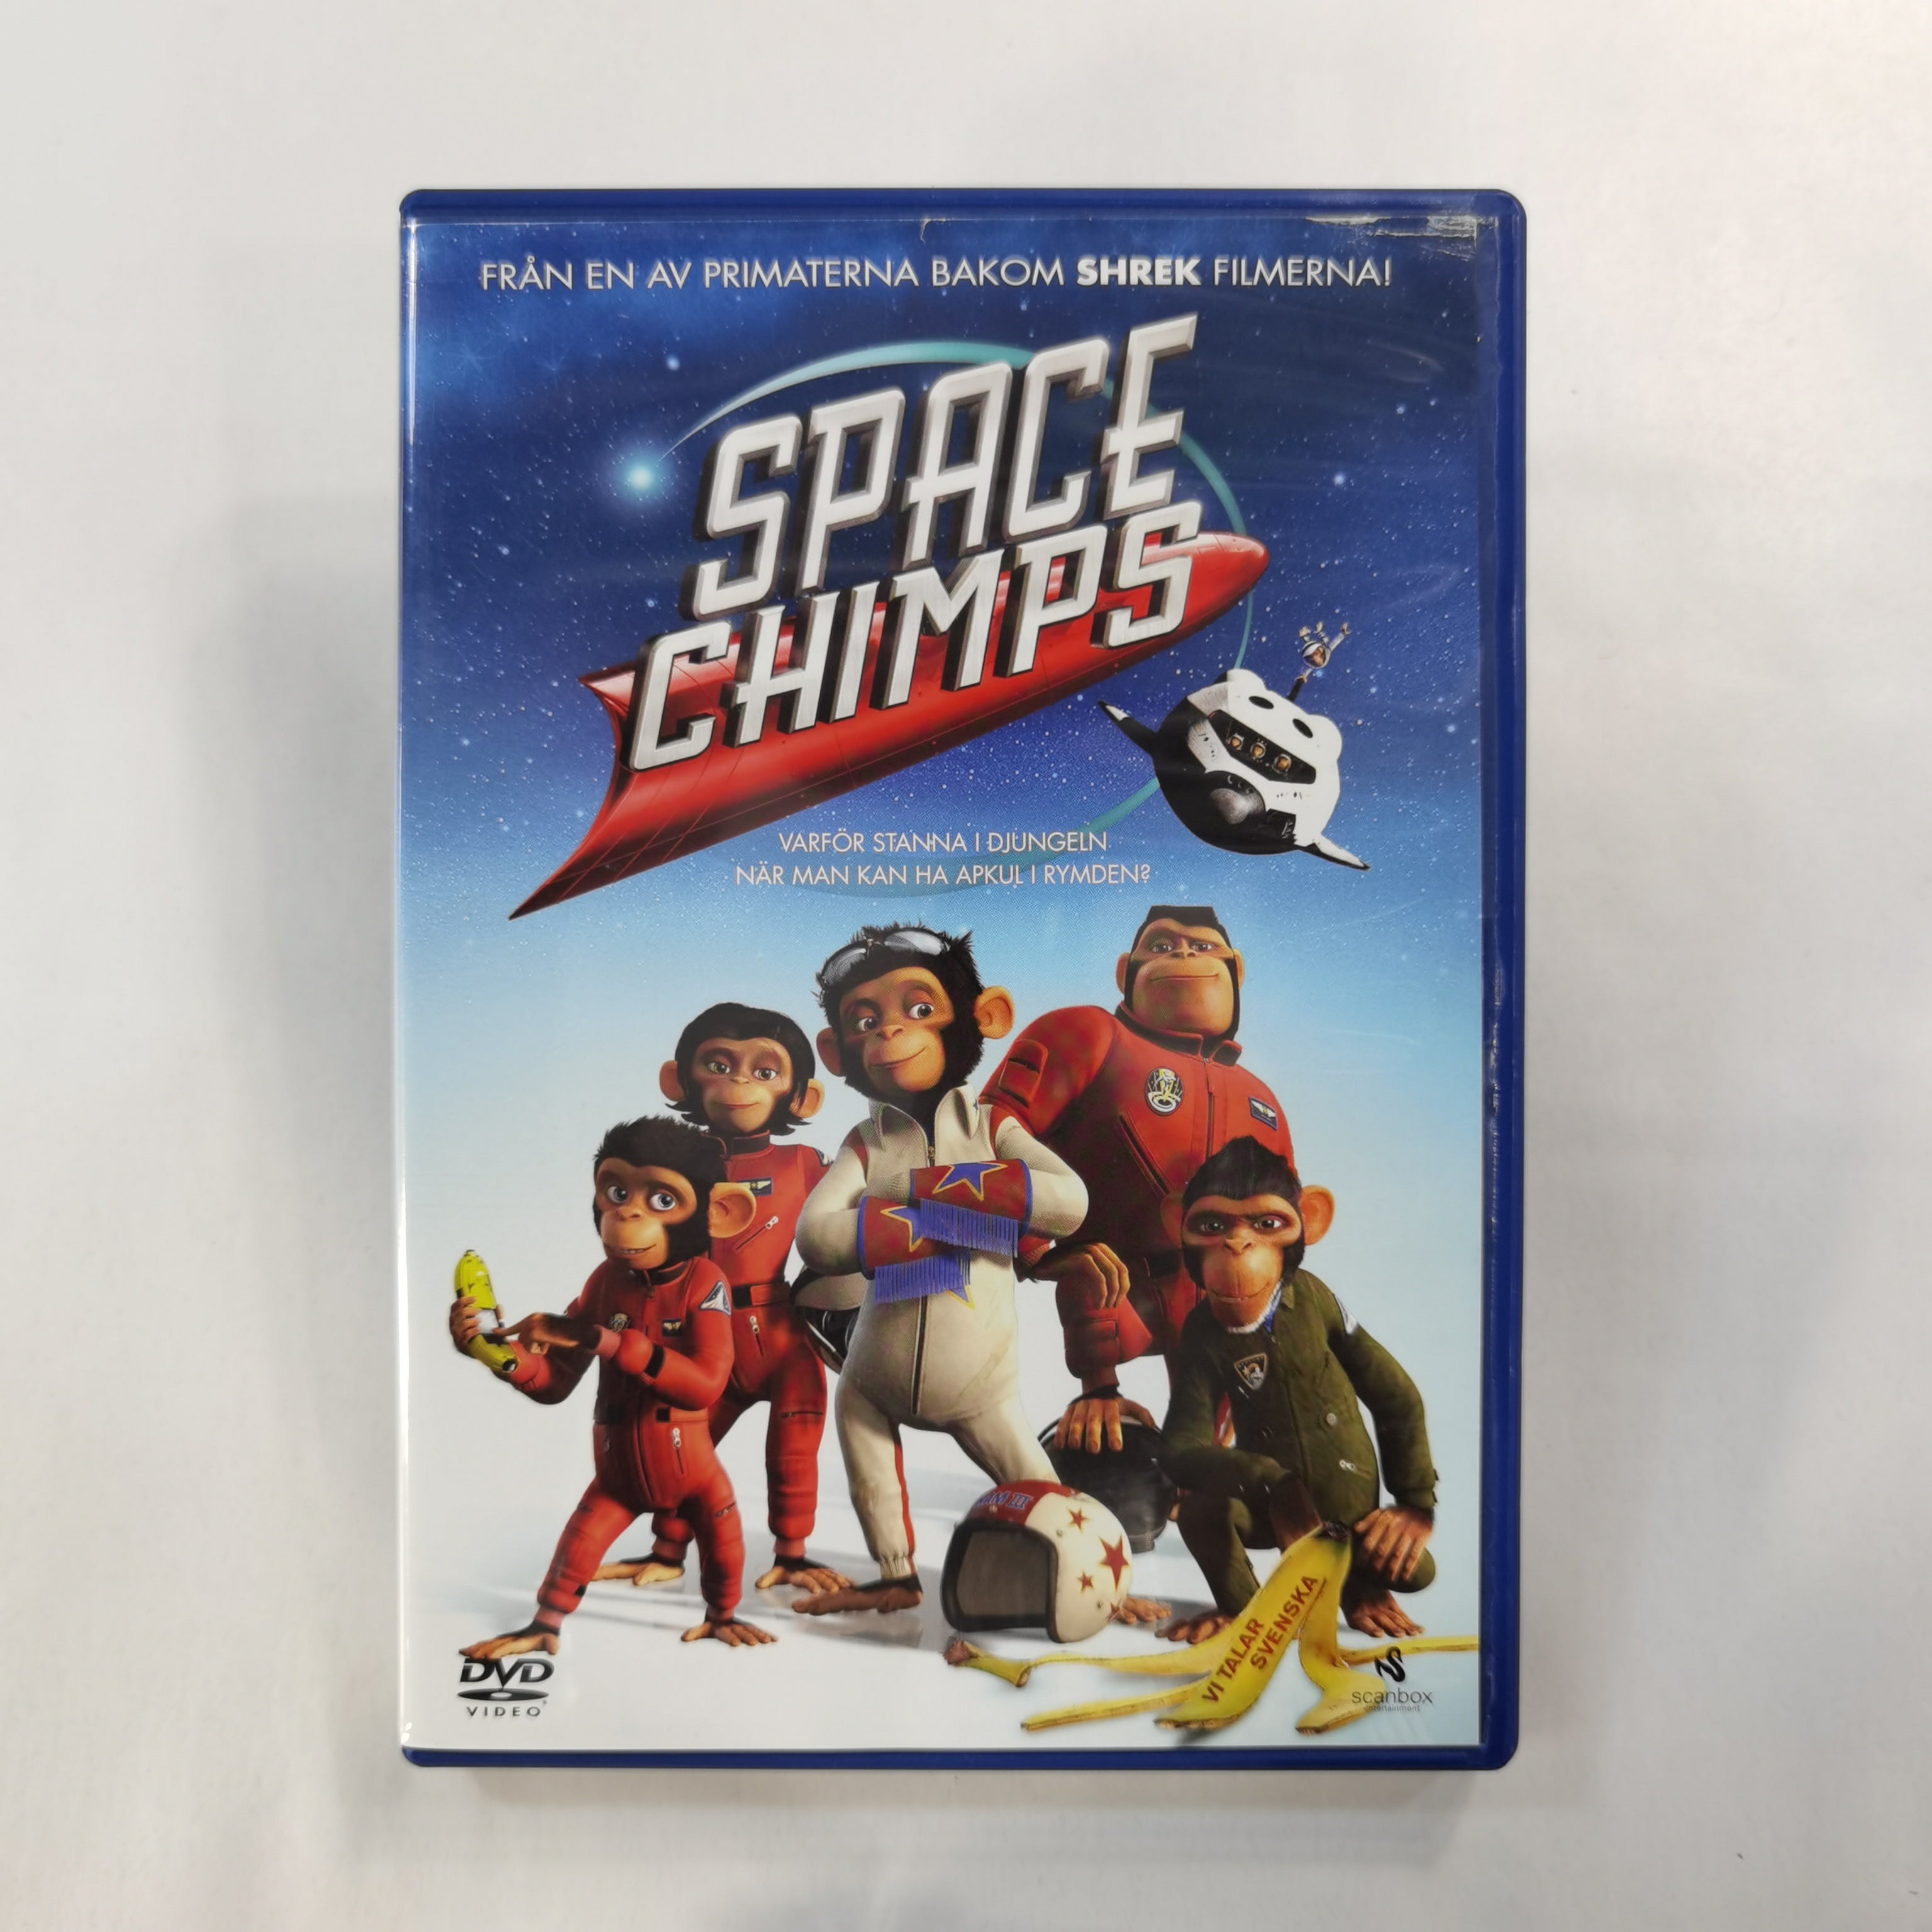 Space Chimps (2008) - DVD SE 2008